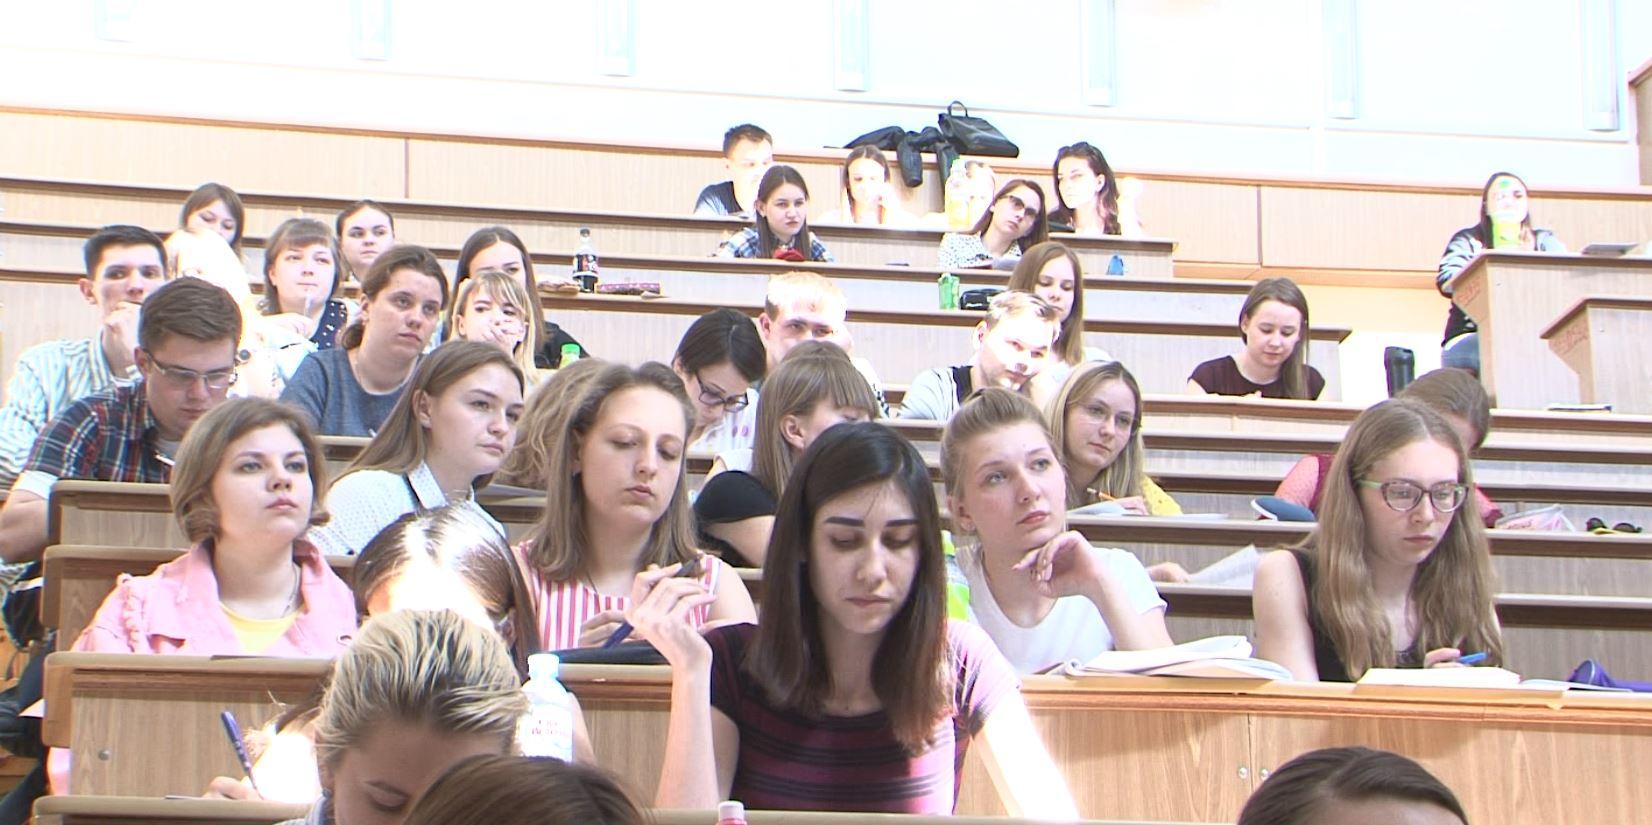 Орловских студентов с их днем поздравили в Правительстве региона